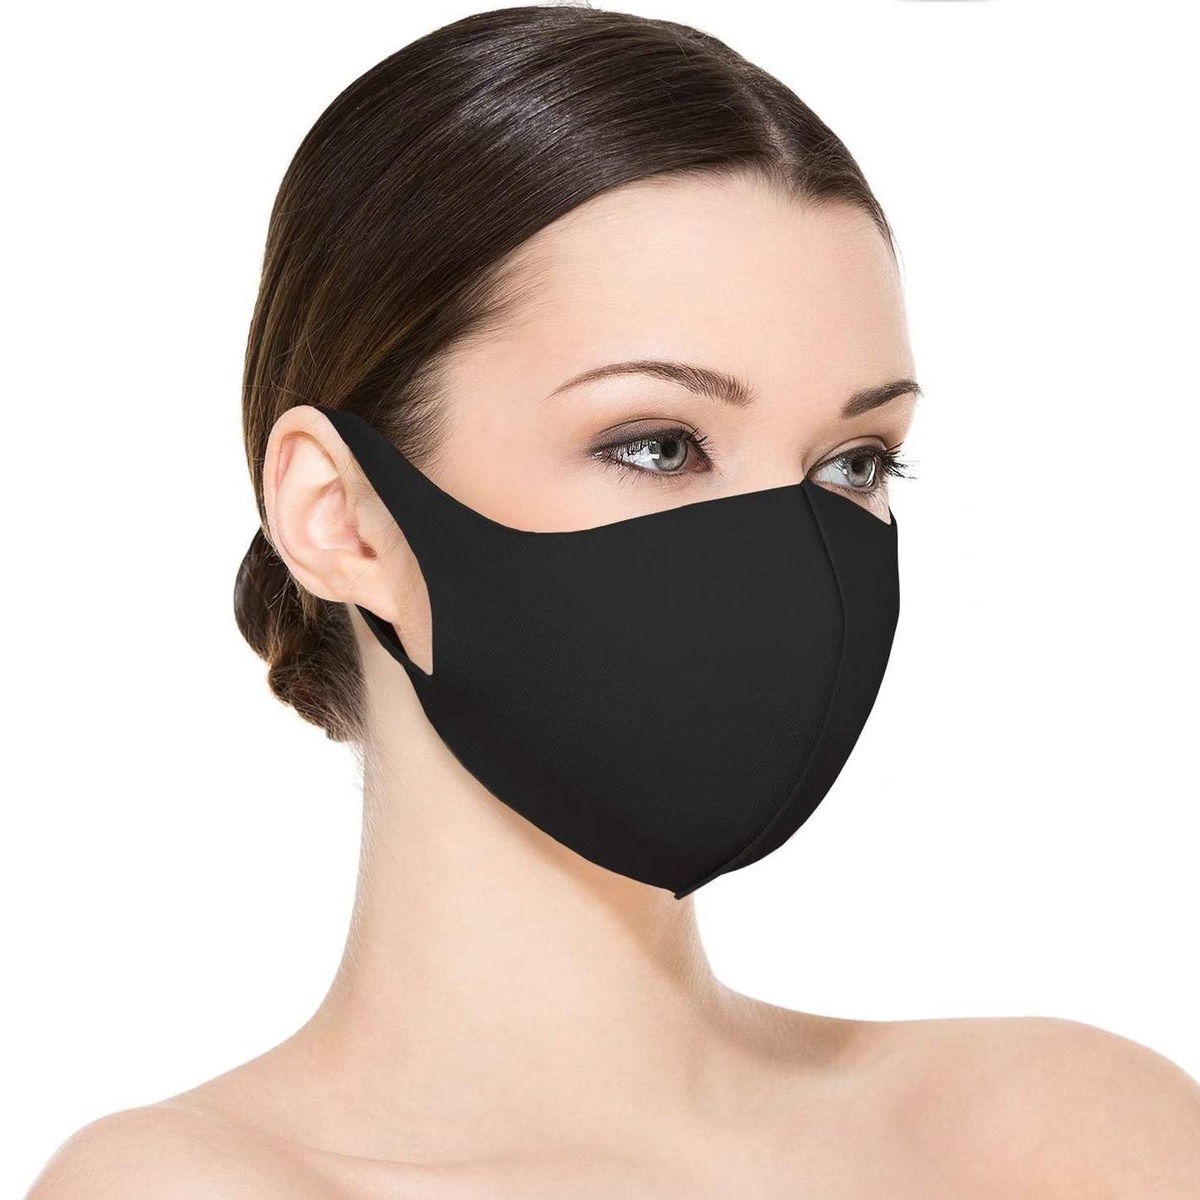 3x FASHION Mondkapje - ZWART - Mondmasker - Wasbaar - Mondkapjes - Black - Facemask - Mouth mask - Herbruikbaar - Adembescherming - Mannen, Vrouwen en Kinderen - Bescherming Openbaar Vervoer - OV